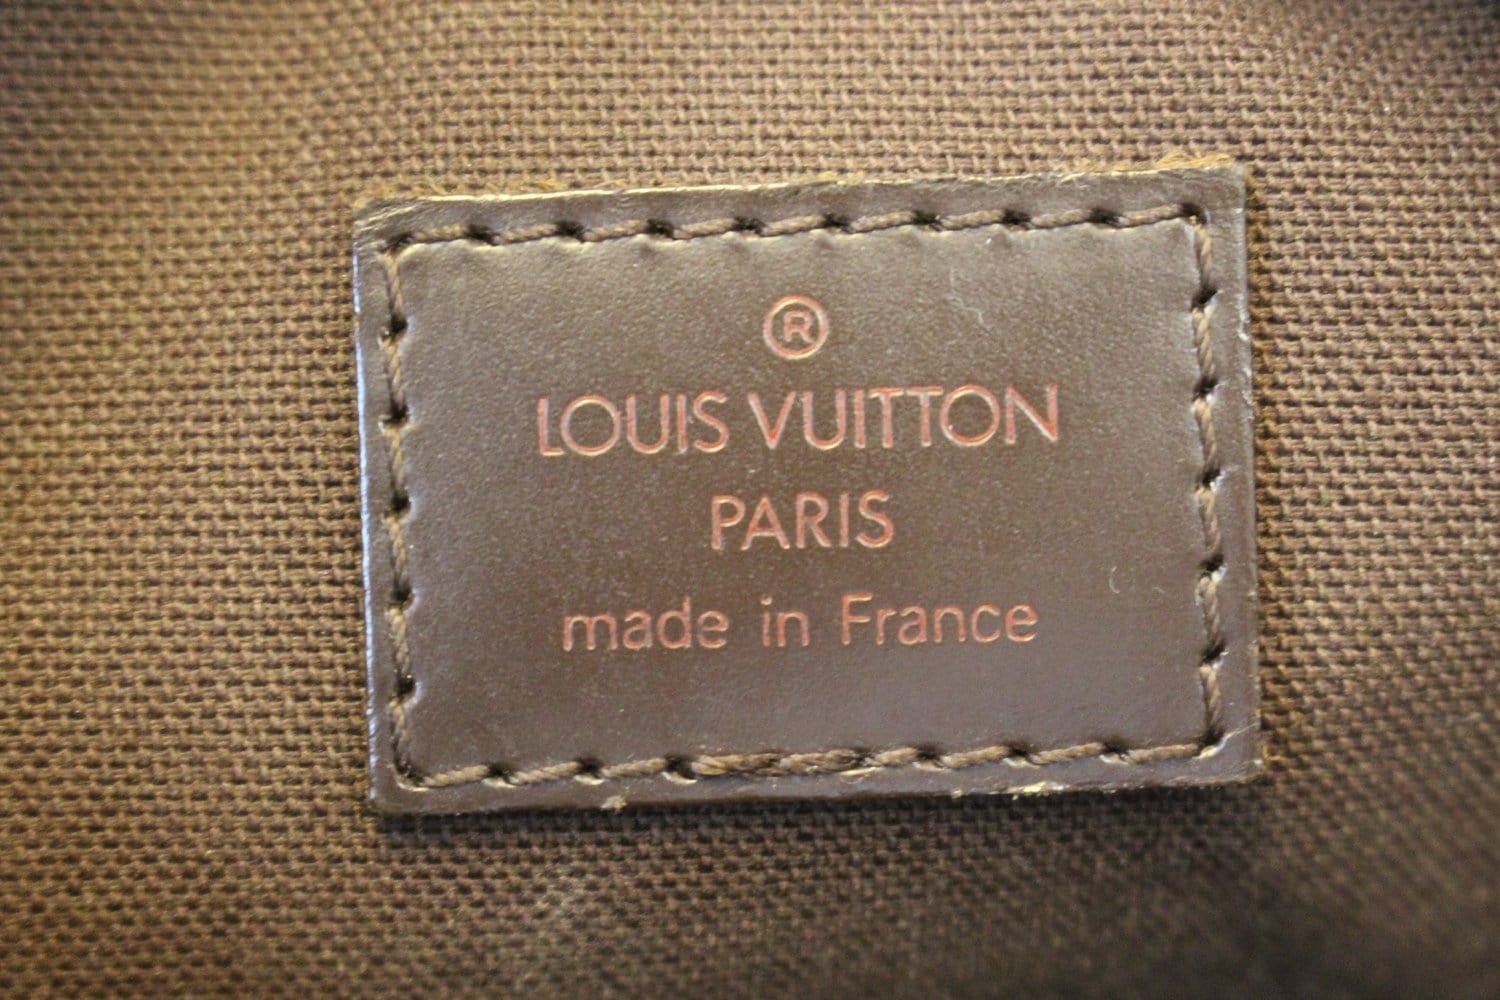 Louis Vuitton Damier Ebene Canvas Olav Mm (Authentic Pre-Owned) - ShopStyle Shoulder  Bags